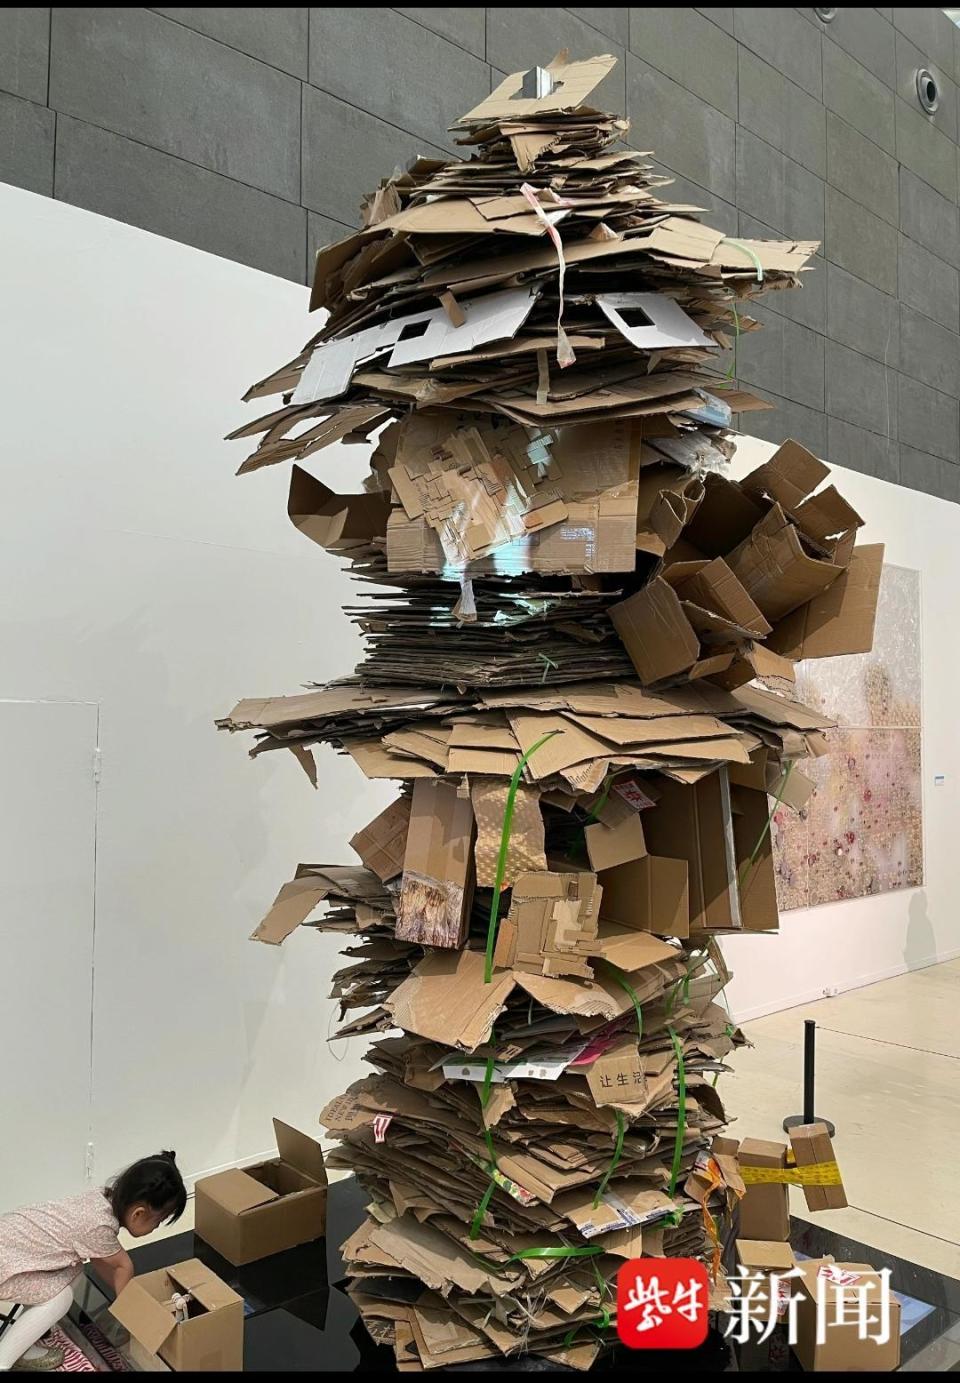 央美毕业展作品《超级蜂巢》被讥垃圾堆,看不懂的现代艺术要怎么看